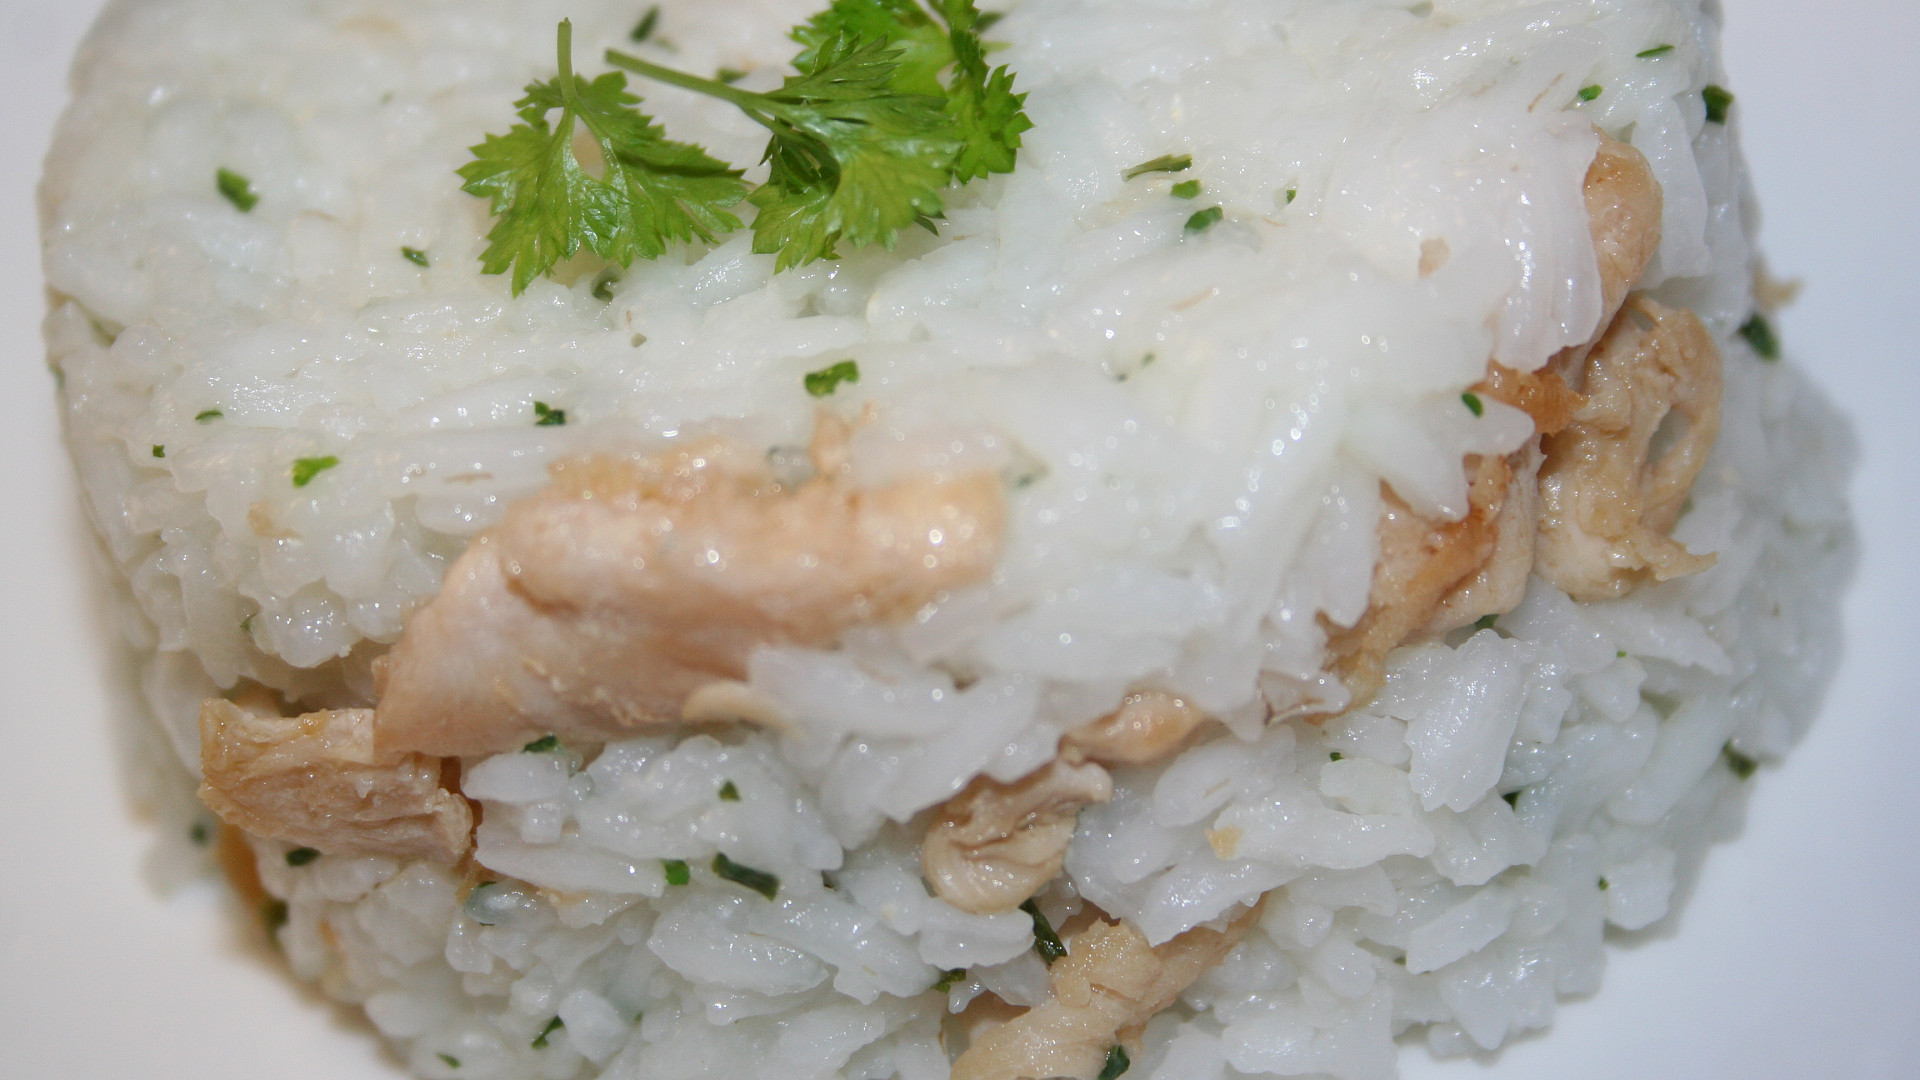 Míchaná rýže